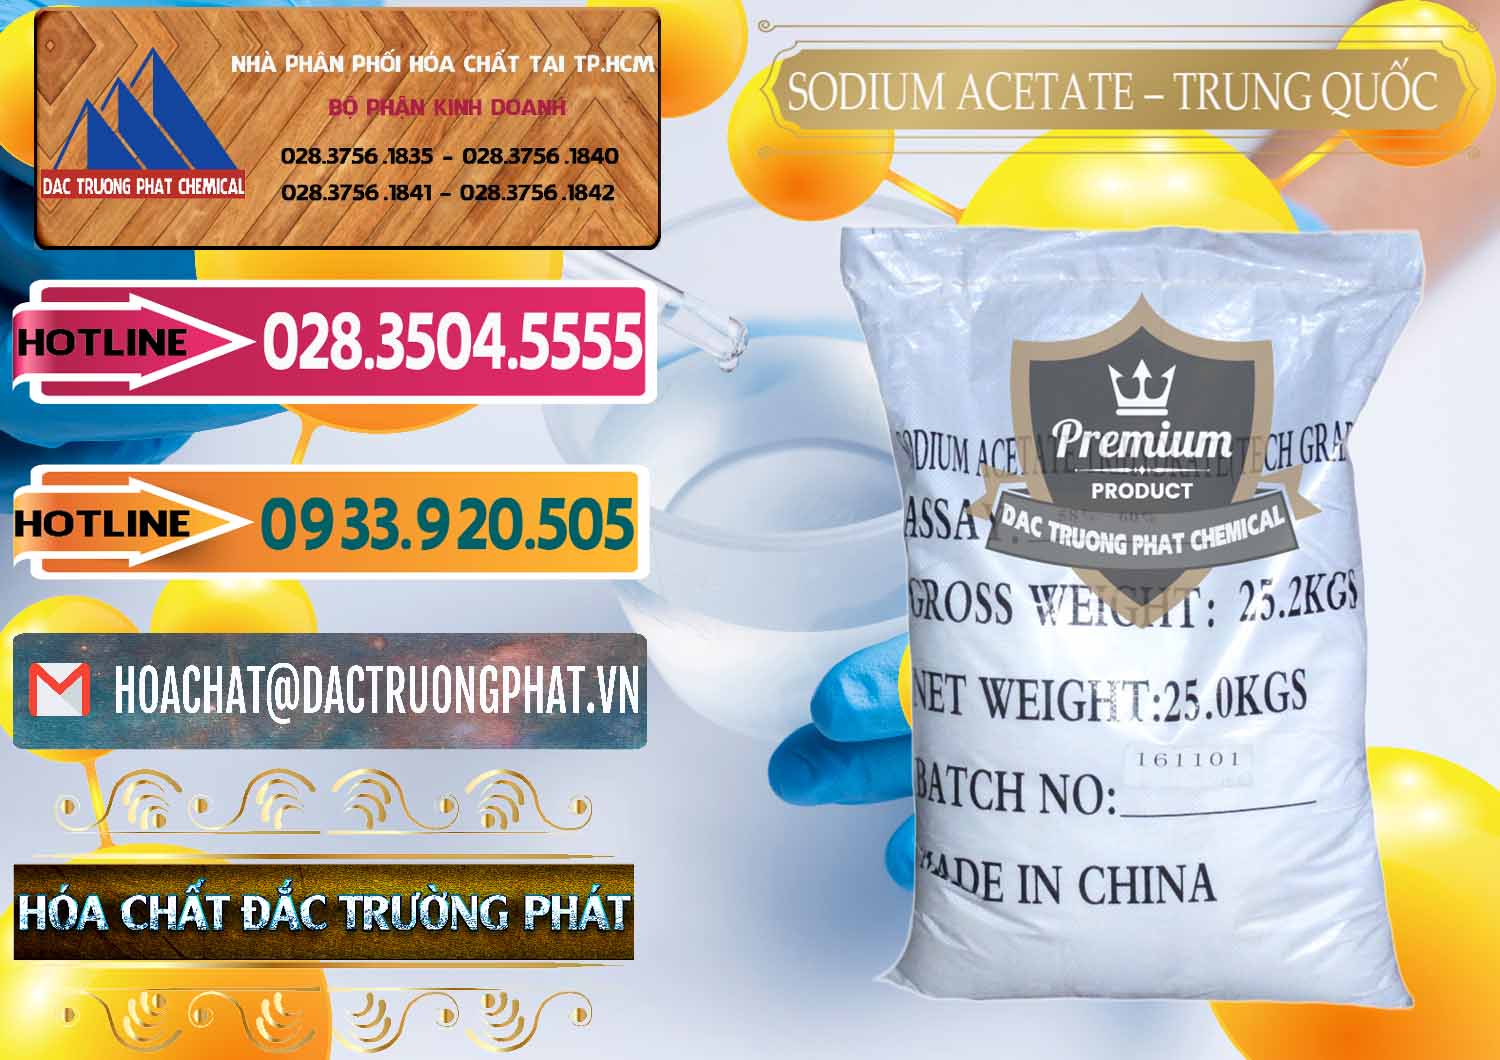 Cty chuyên phân phối & bán Sodium Acetate - Natri Acetate Trung Quốc China - 0134 - Nơi phân phối và cung ứng hóa chất tại TP.HCM - dactruongphat.vn